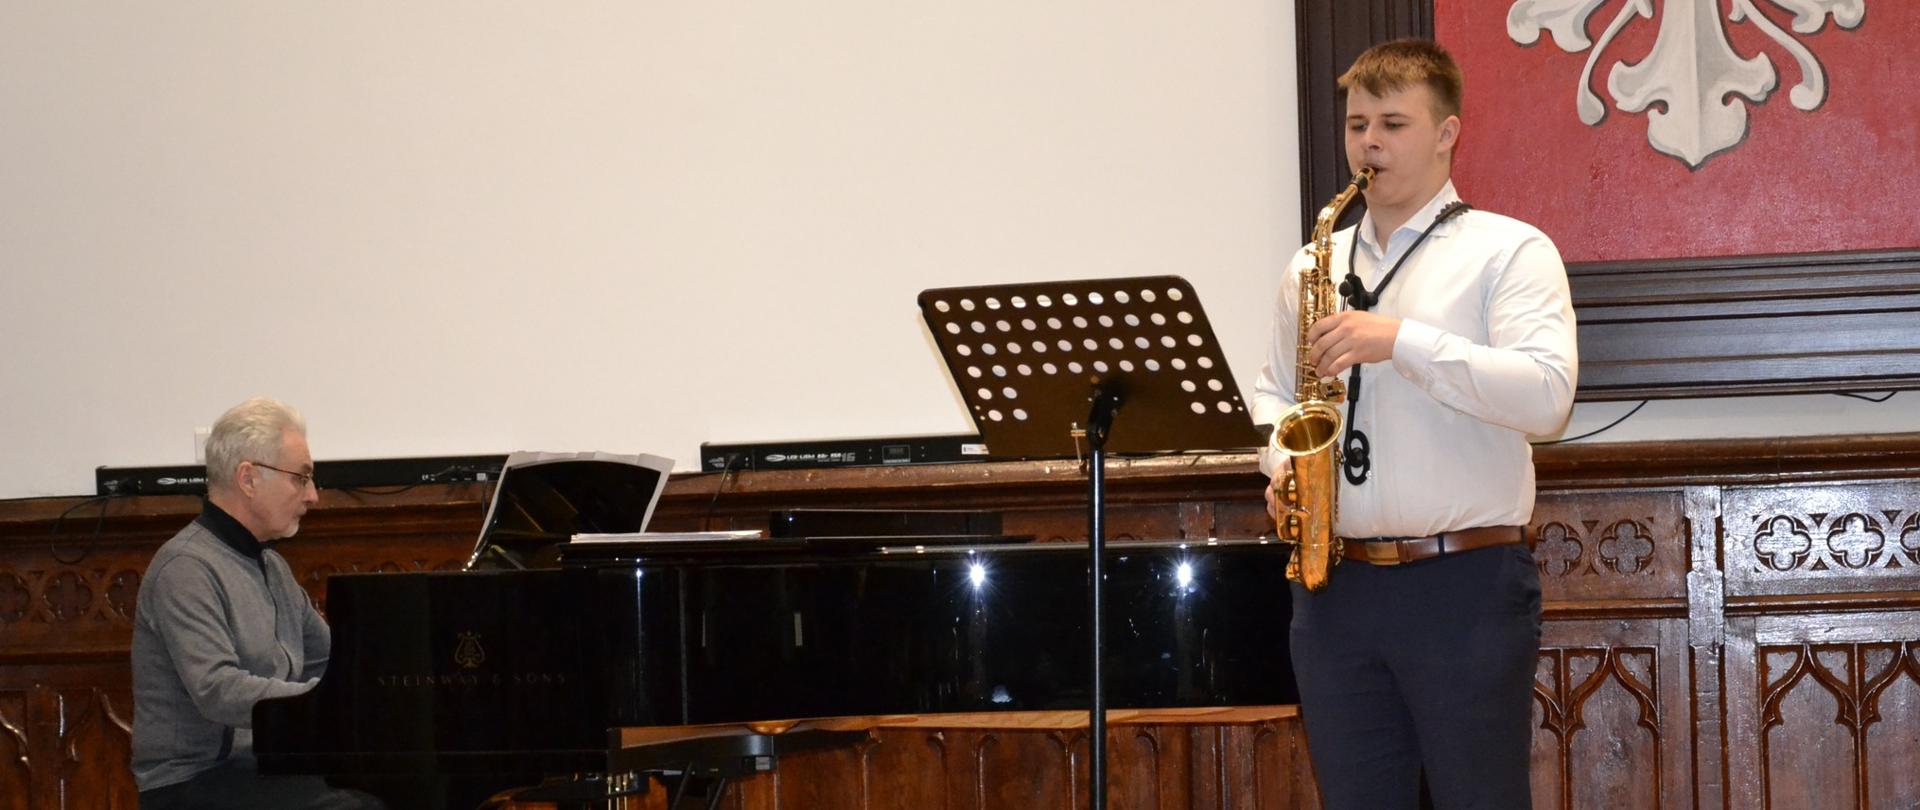 Dawid Machnik oraz akompaniator Jan Lubieniecki podczas recitalu muzyki saksofonowej na scenie w Sali Królewskiej PSM w Mielcu